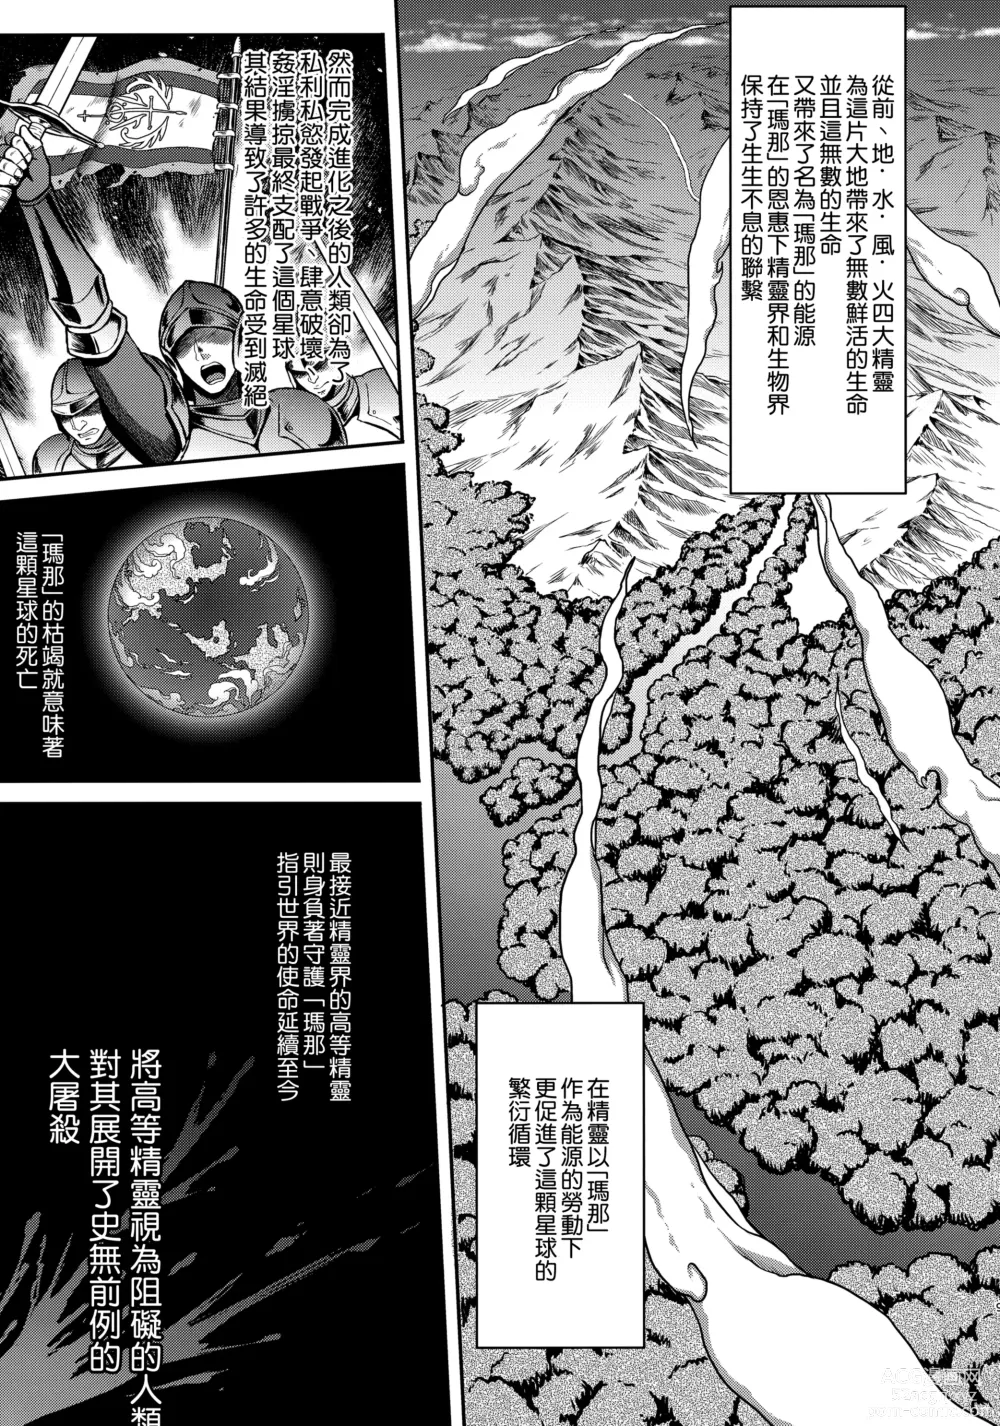 Page 6 of doujinshi Tasogare no Shou Elf 5